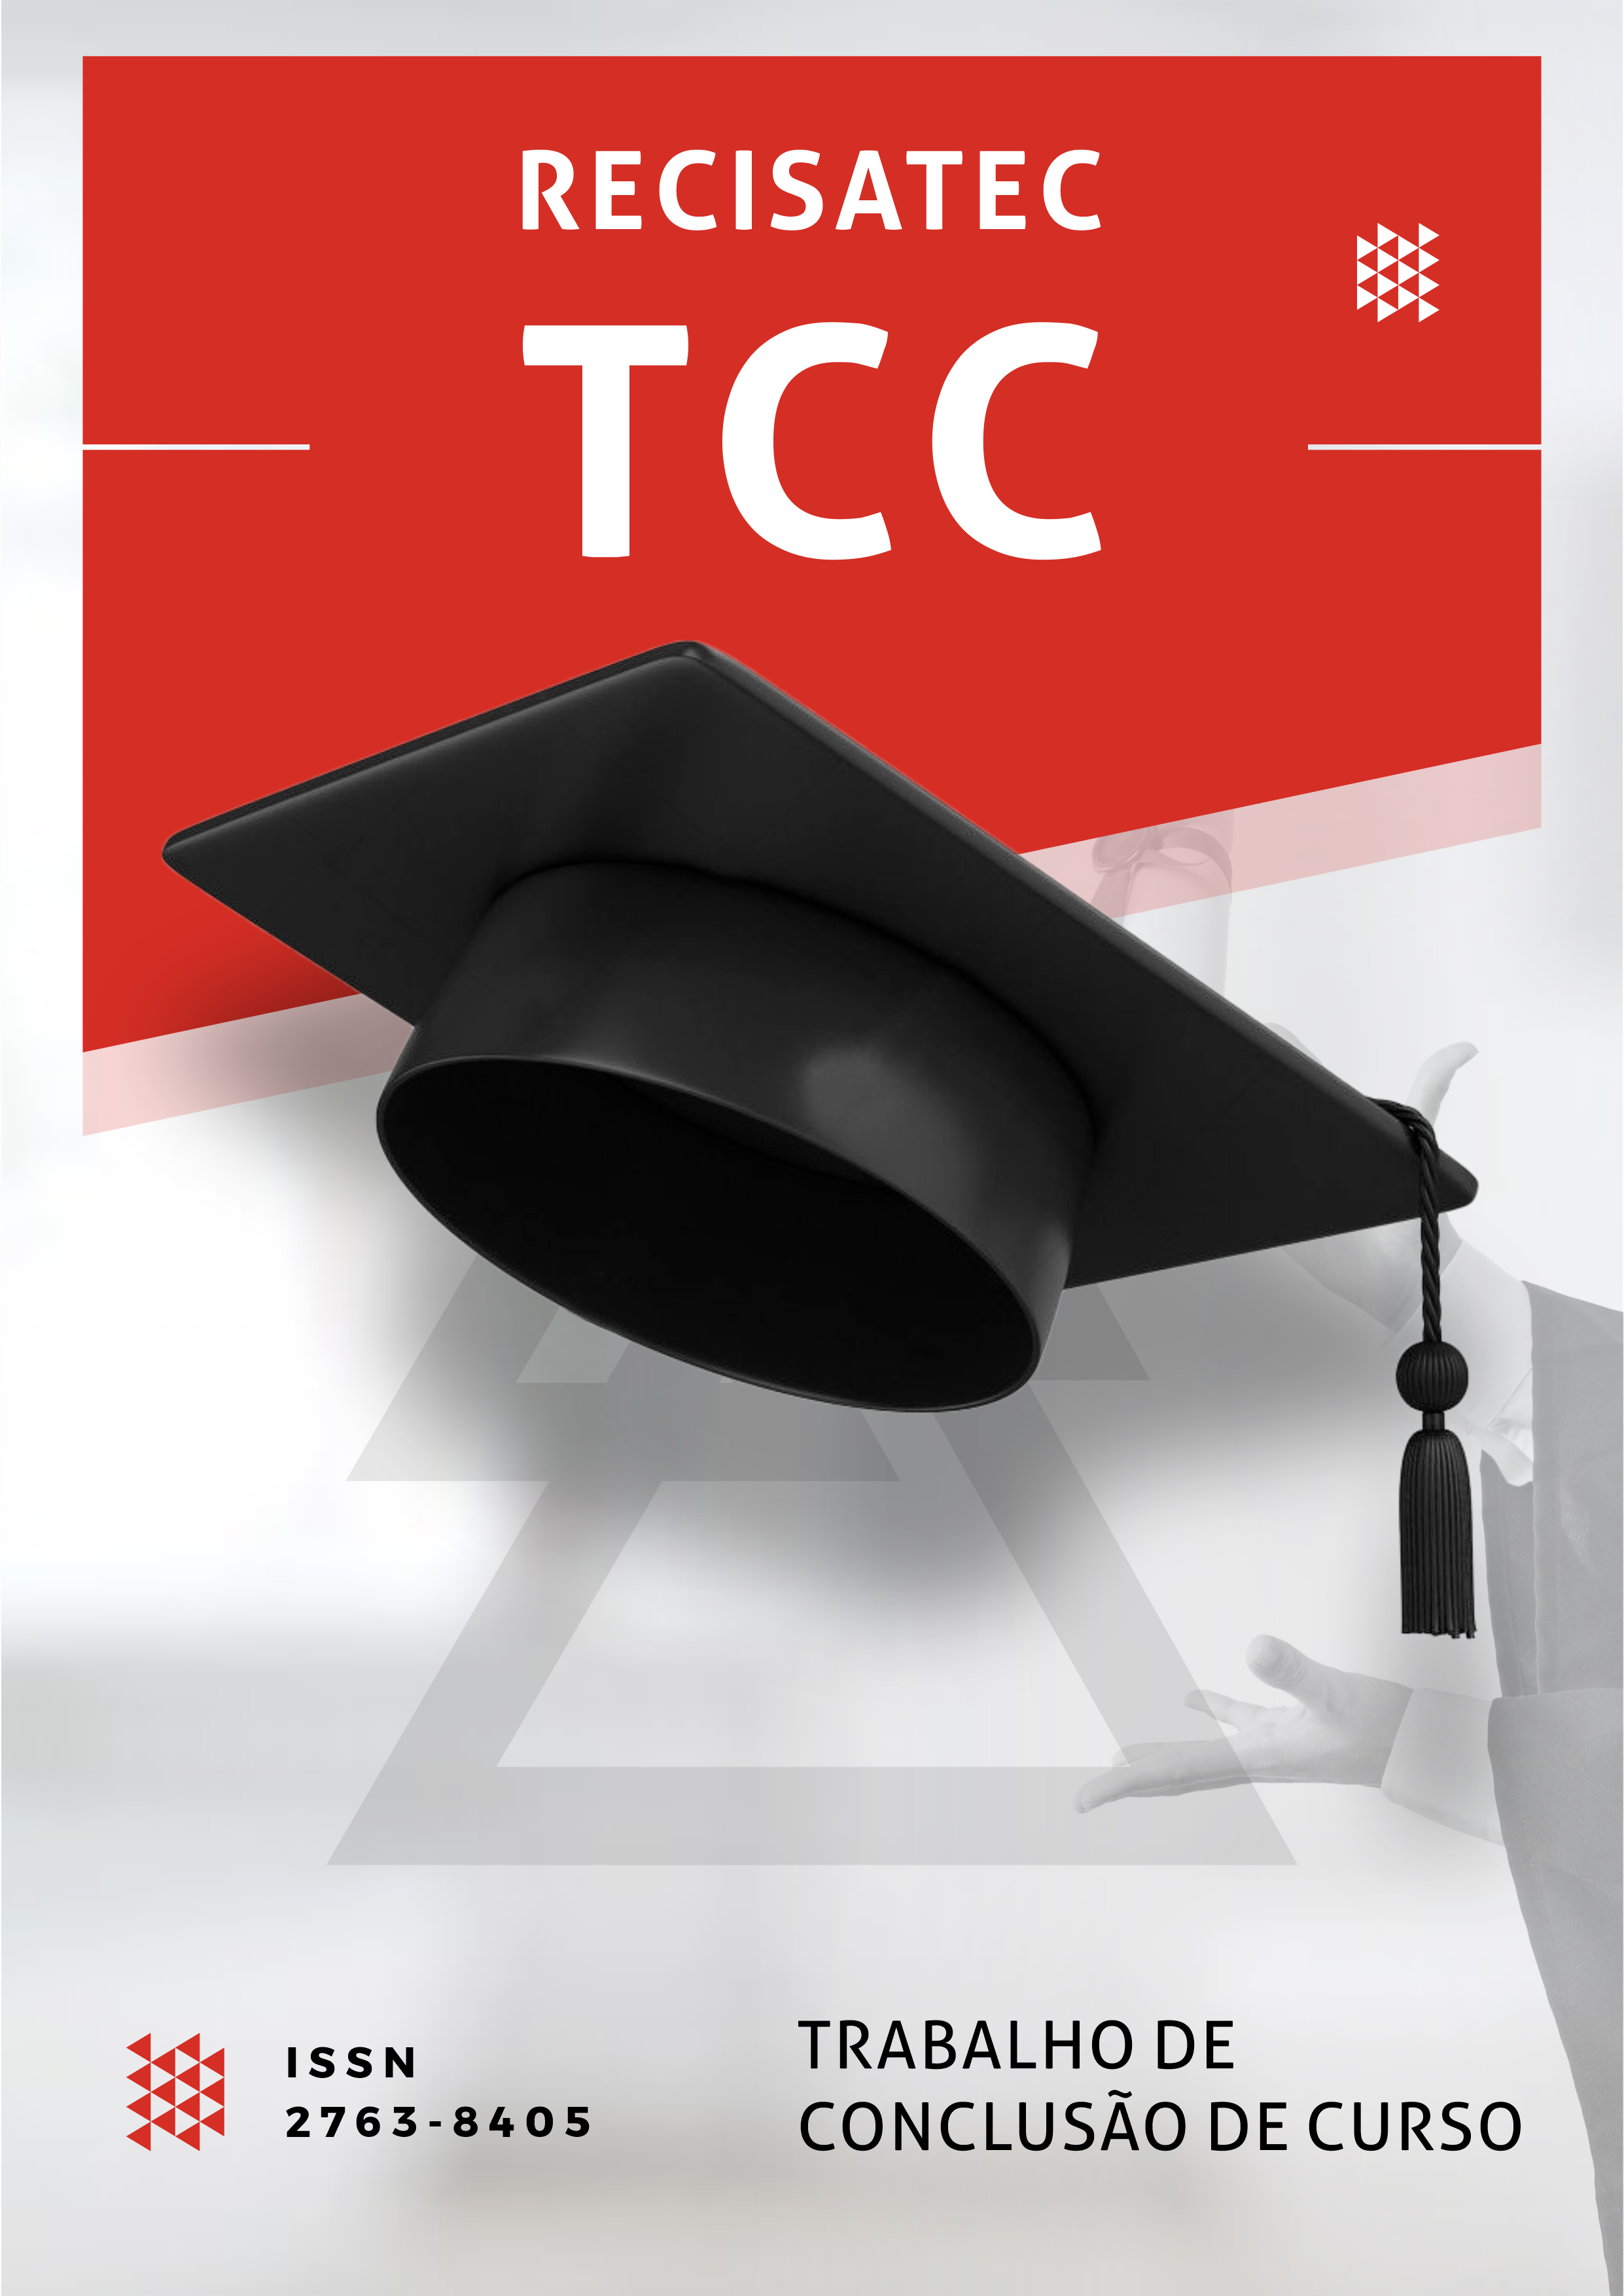 TCC - RECISATEC